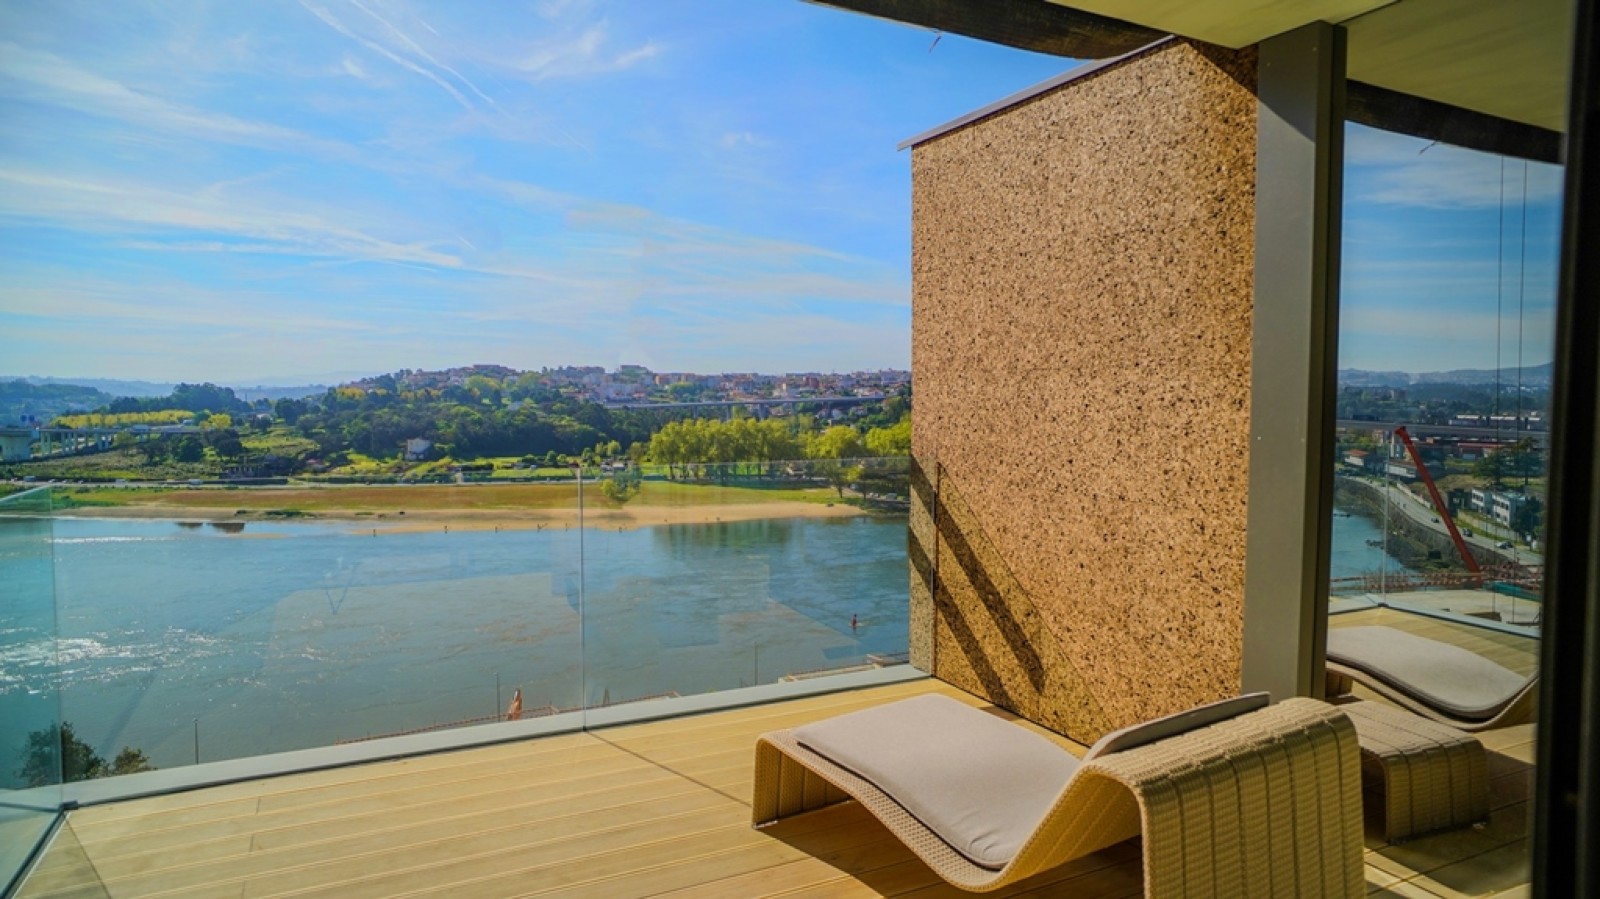 Apartamento T3+1 Duplex com vista de rio, para venda, Porto, Portugal_259565